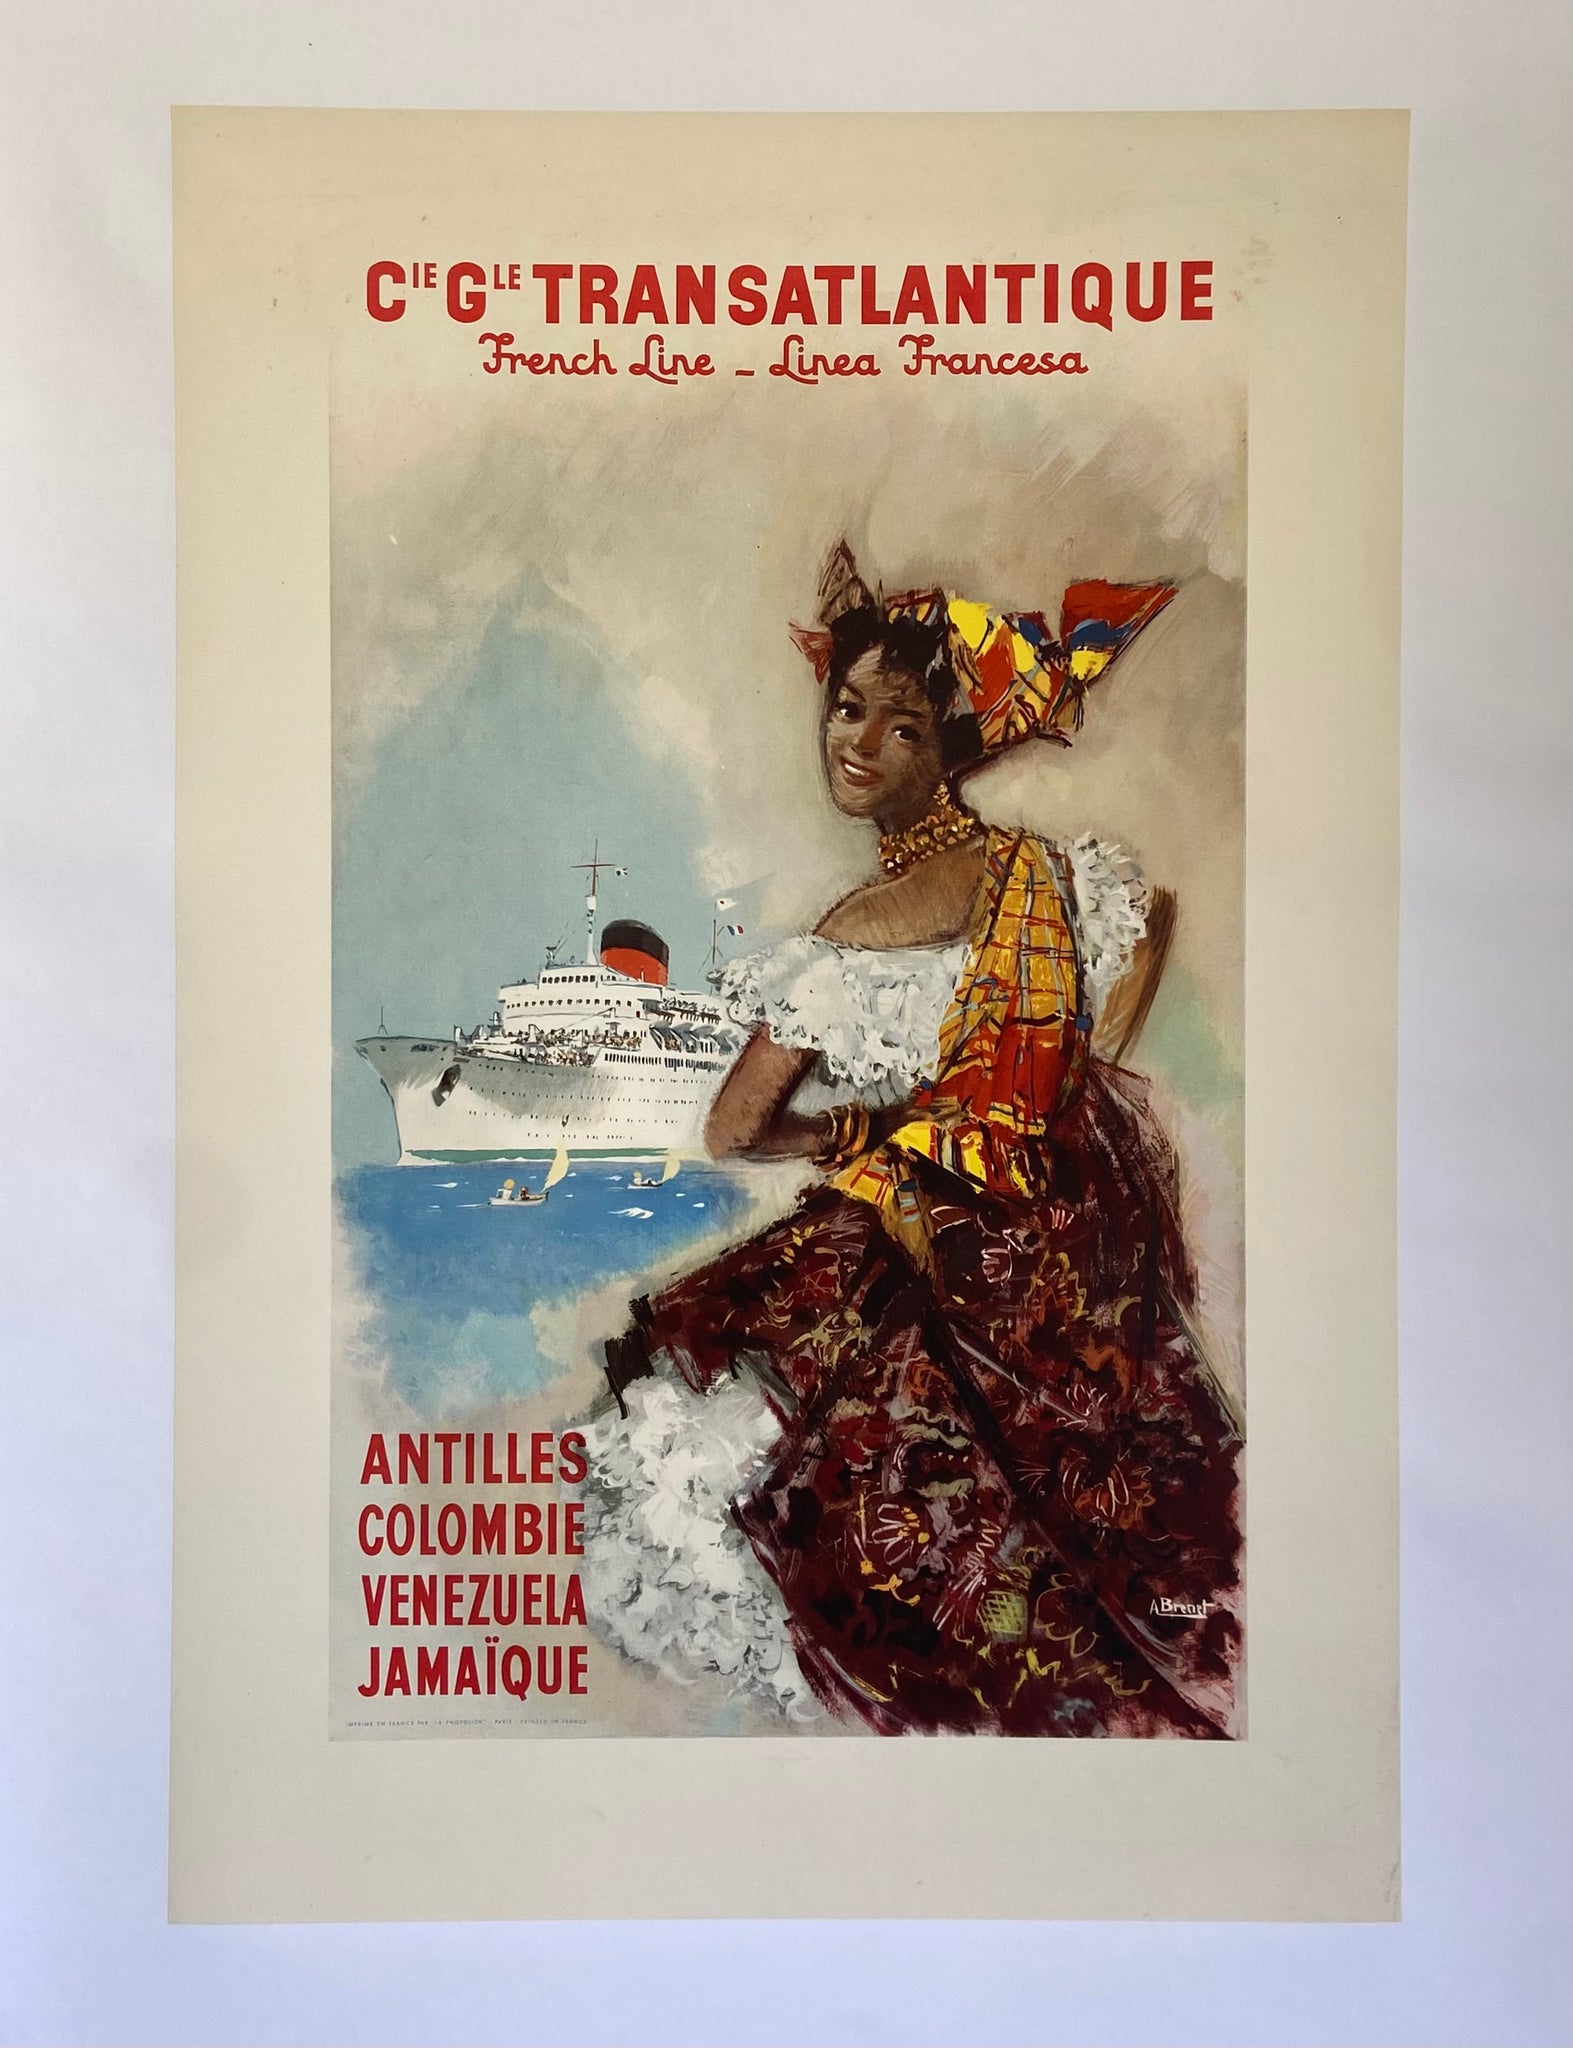 Affiche Compagnie Générale Transatlantique Antilles Colombie Venezuela Jamaique par A Brenet